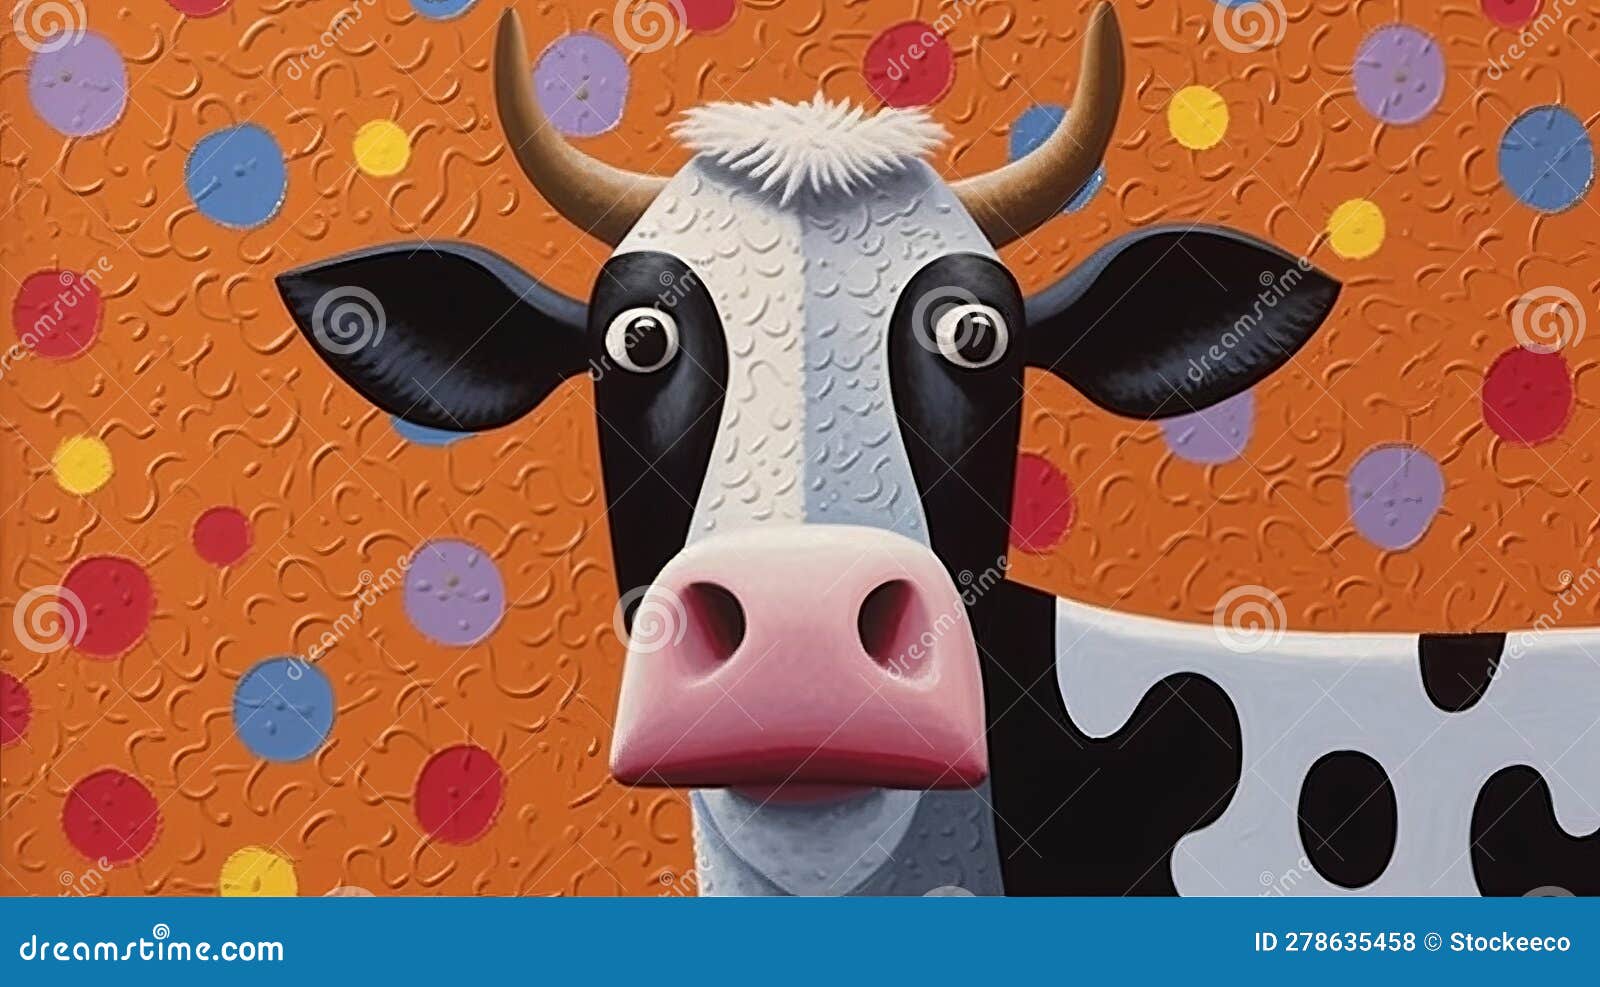 create lowell herrero cow-inspired artwork